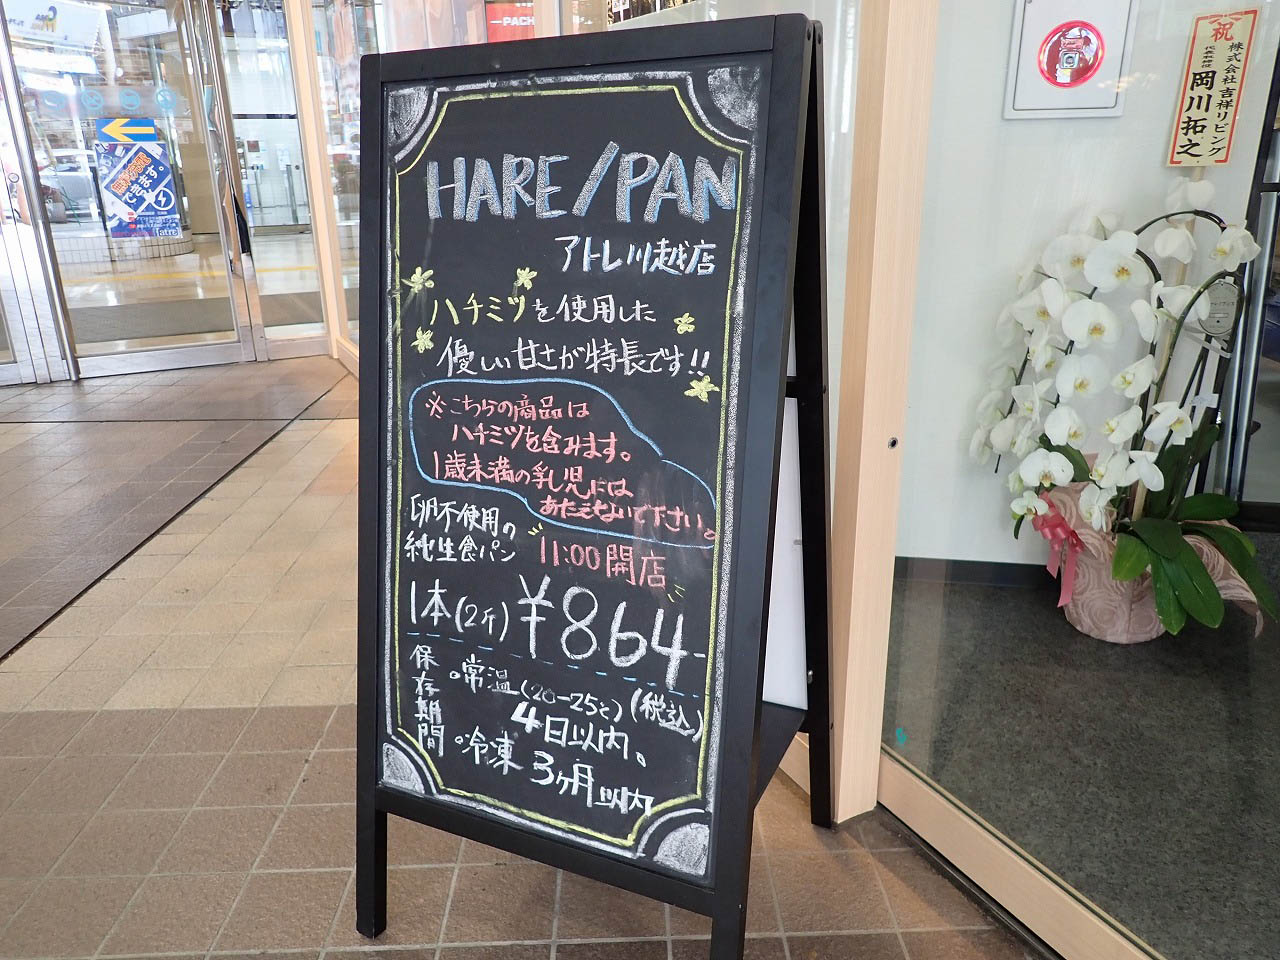 『純生食パン工房HARE／PAN・アトレ川越店』の店先の案内